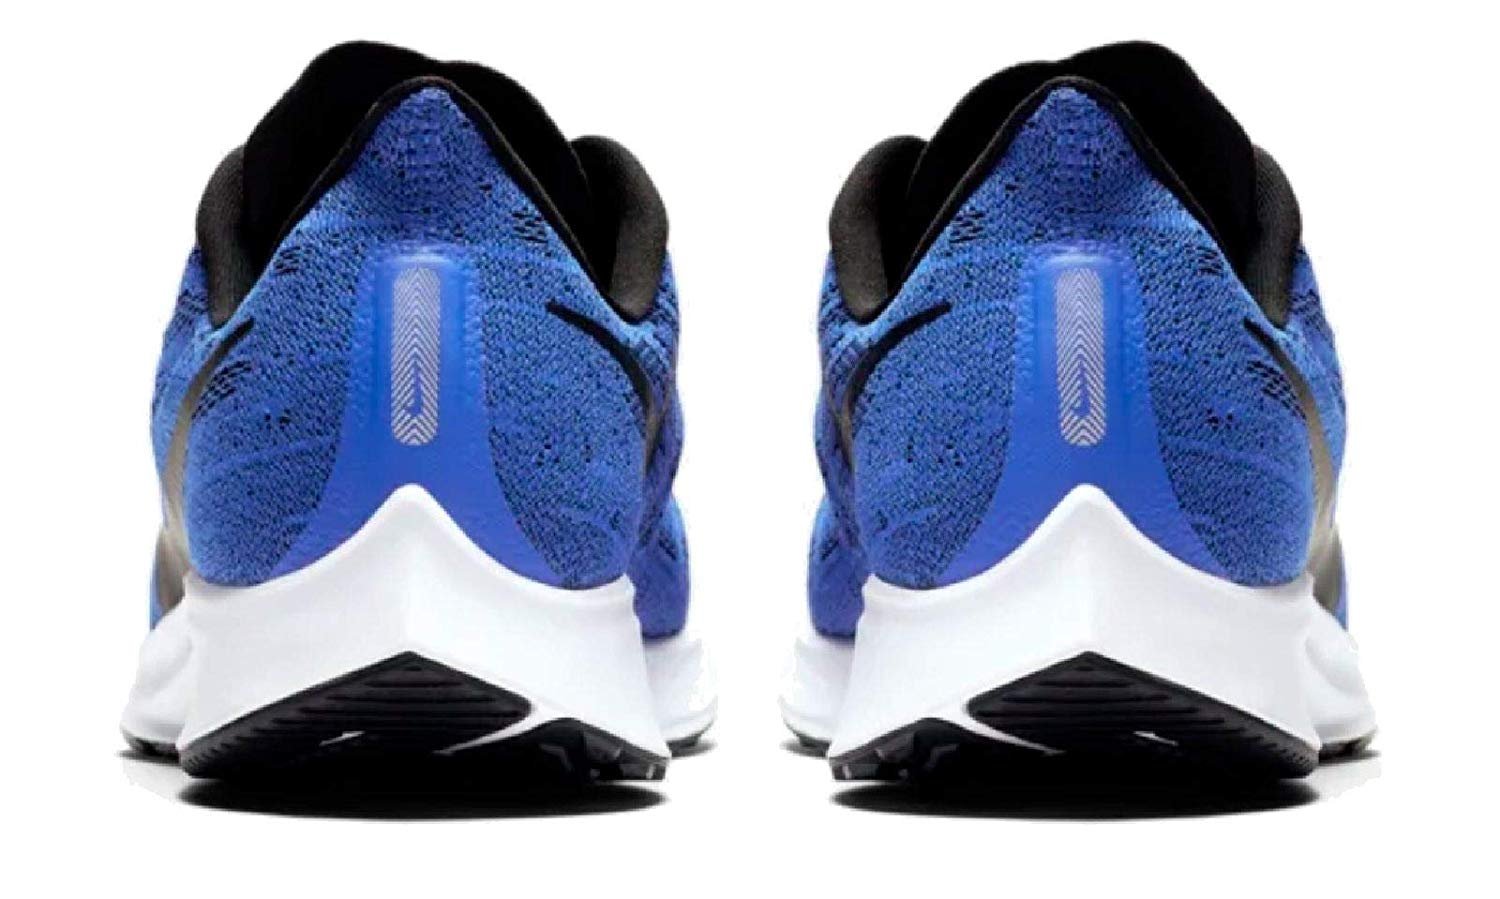 Nike Air Zoom Pegasus 36 Men's Running Shoe Racer Blue/Black-White Size 11.0 - image 4 of 6